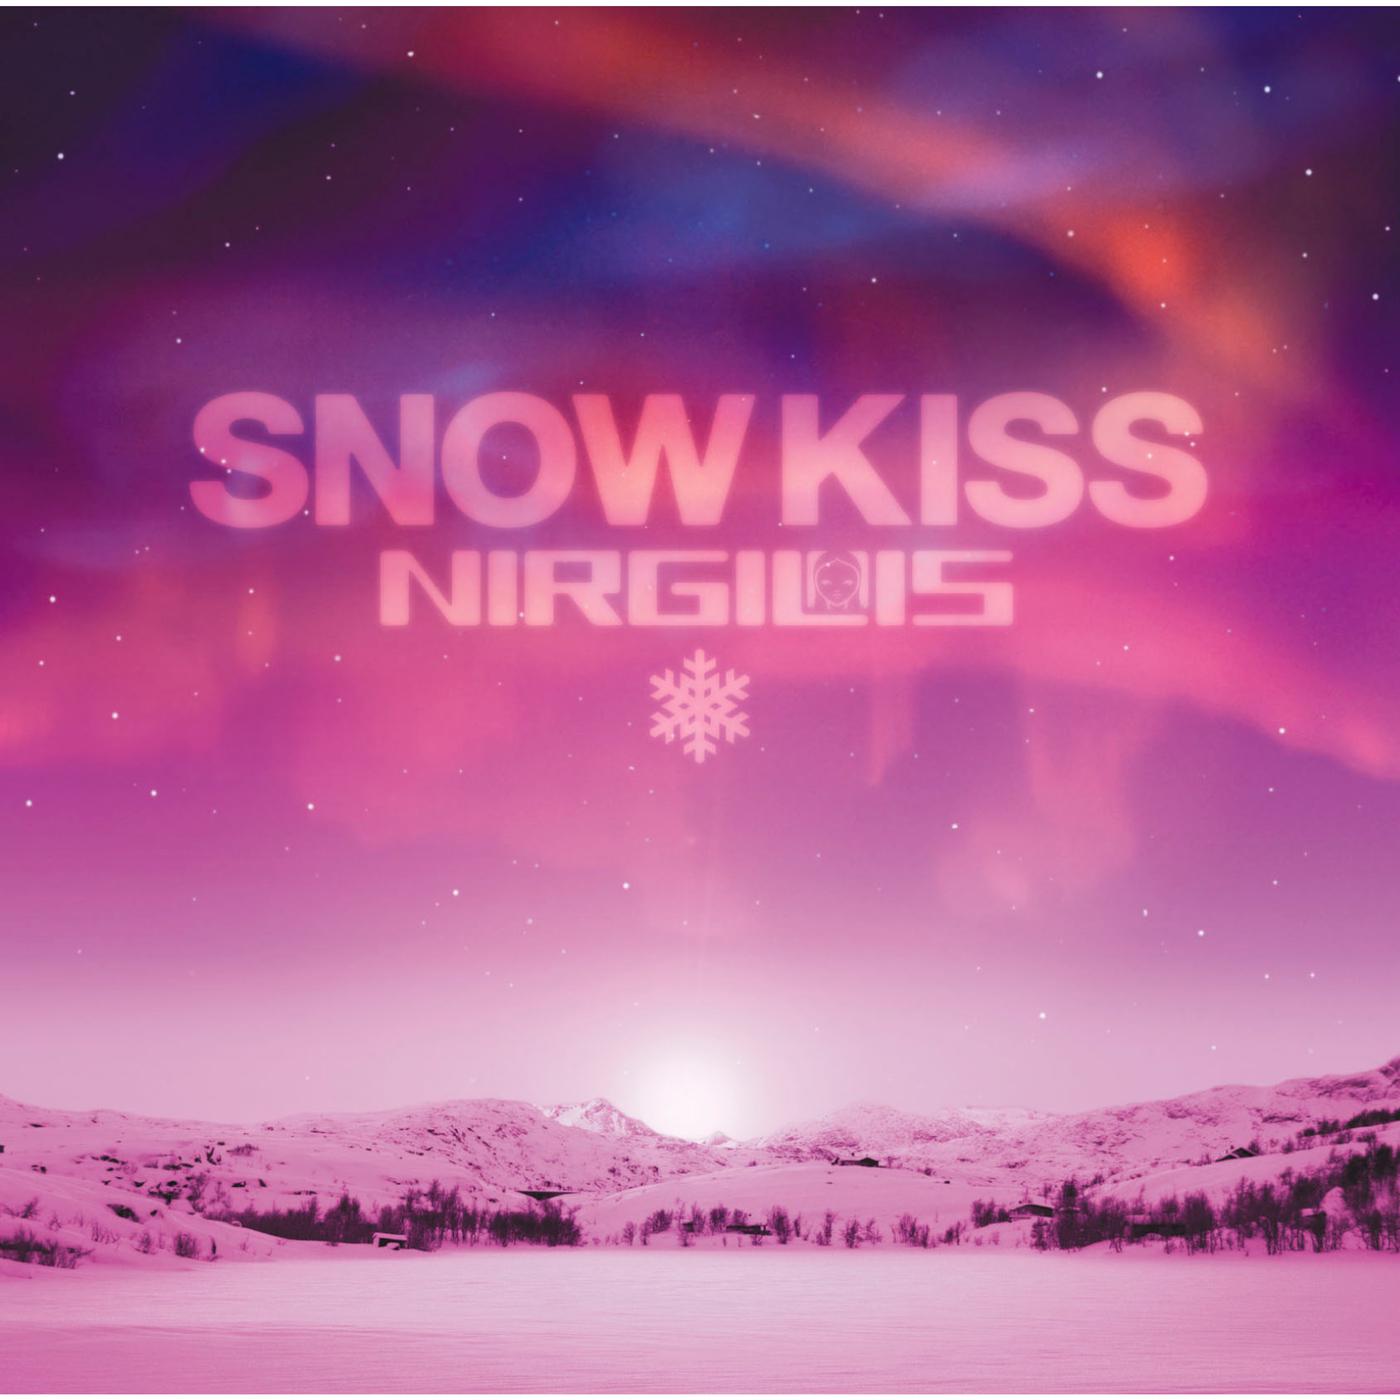 SNOW KISS歌词 歌手NIRGILIS-专辑SNOW KISS-单曲《SNOW KISS》LRC歌词下载